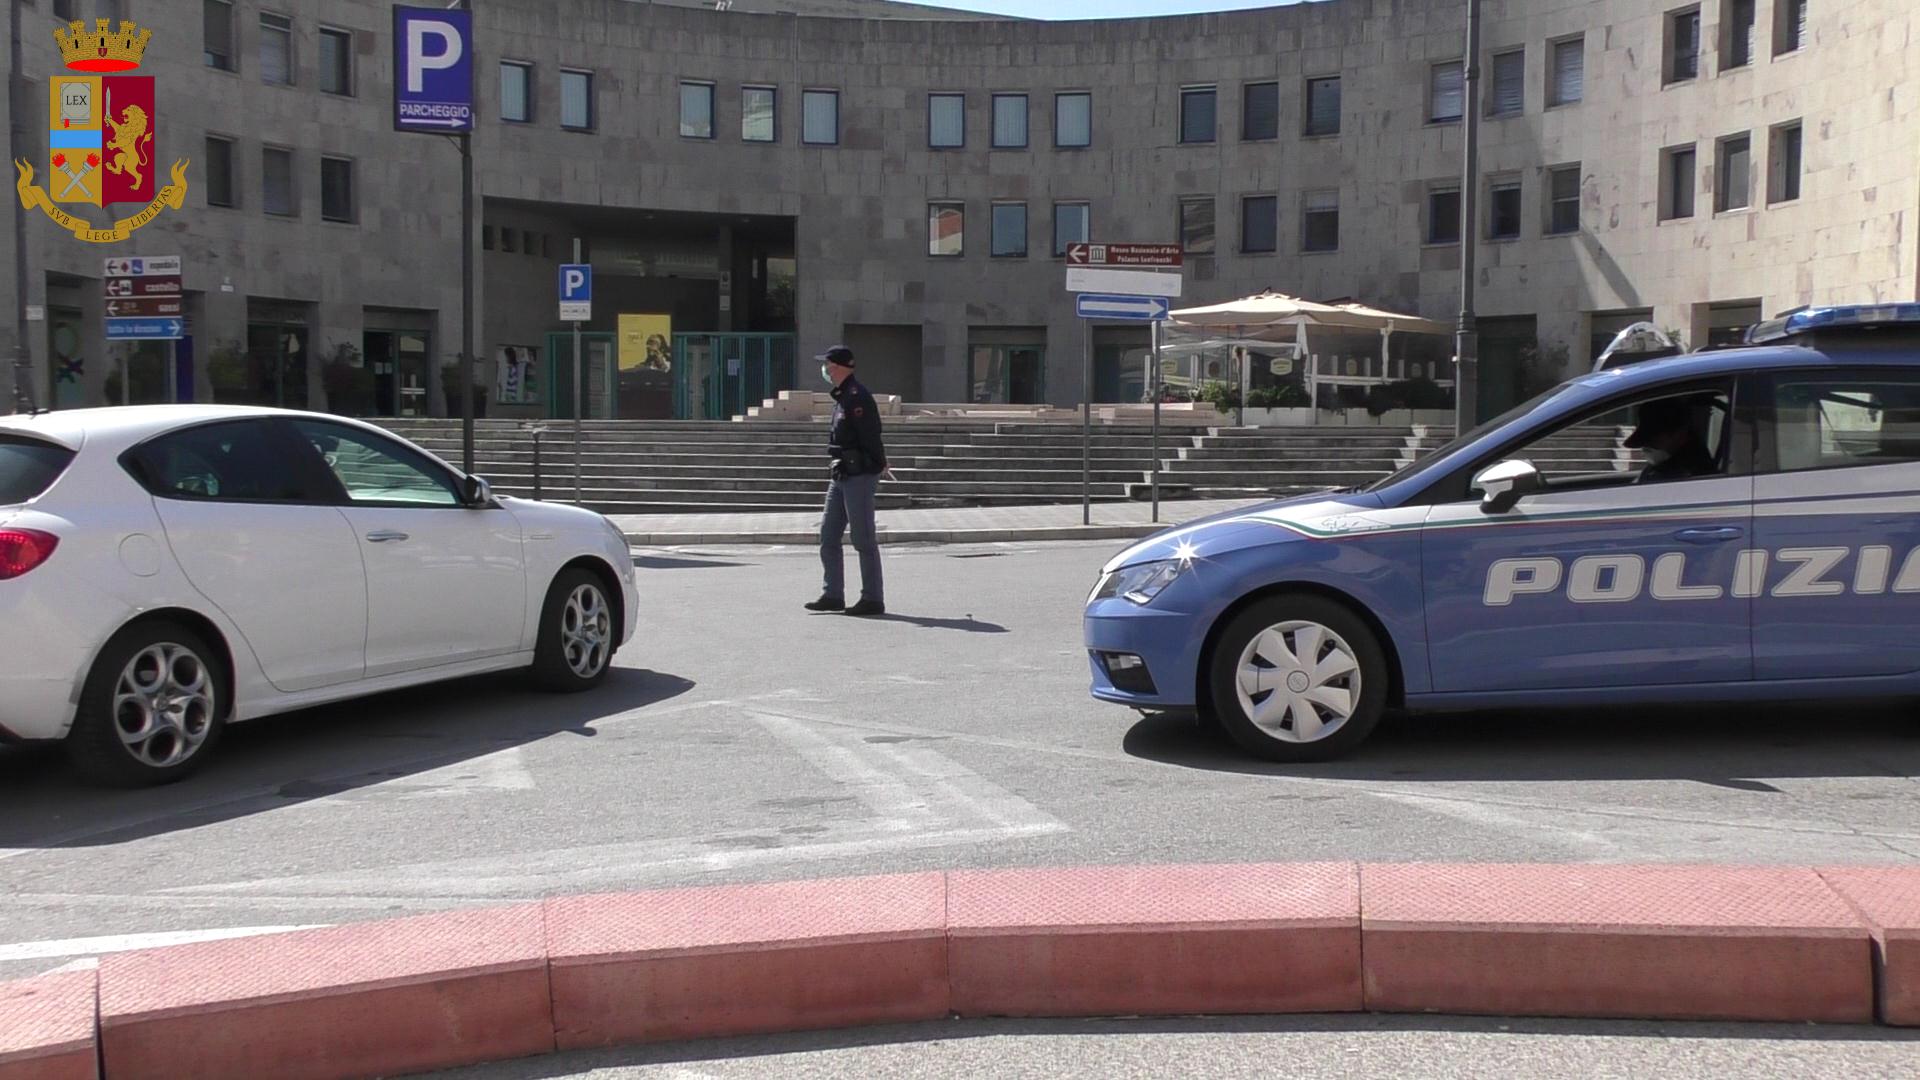 “Usate la mascherina”: il messaggio diffuso nel centro di Matera tramite altoparlante da un’auto della Polizia